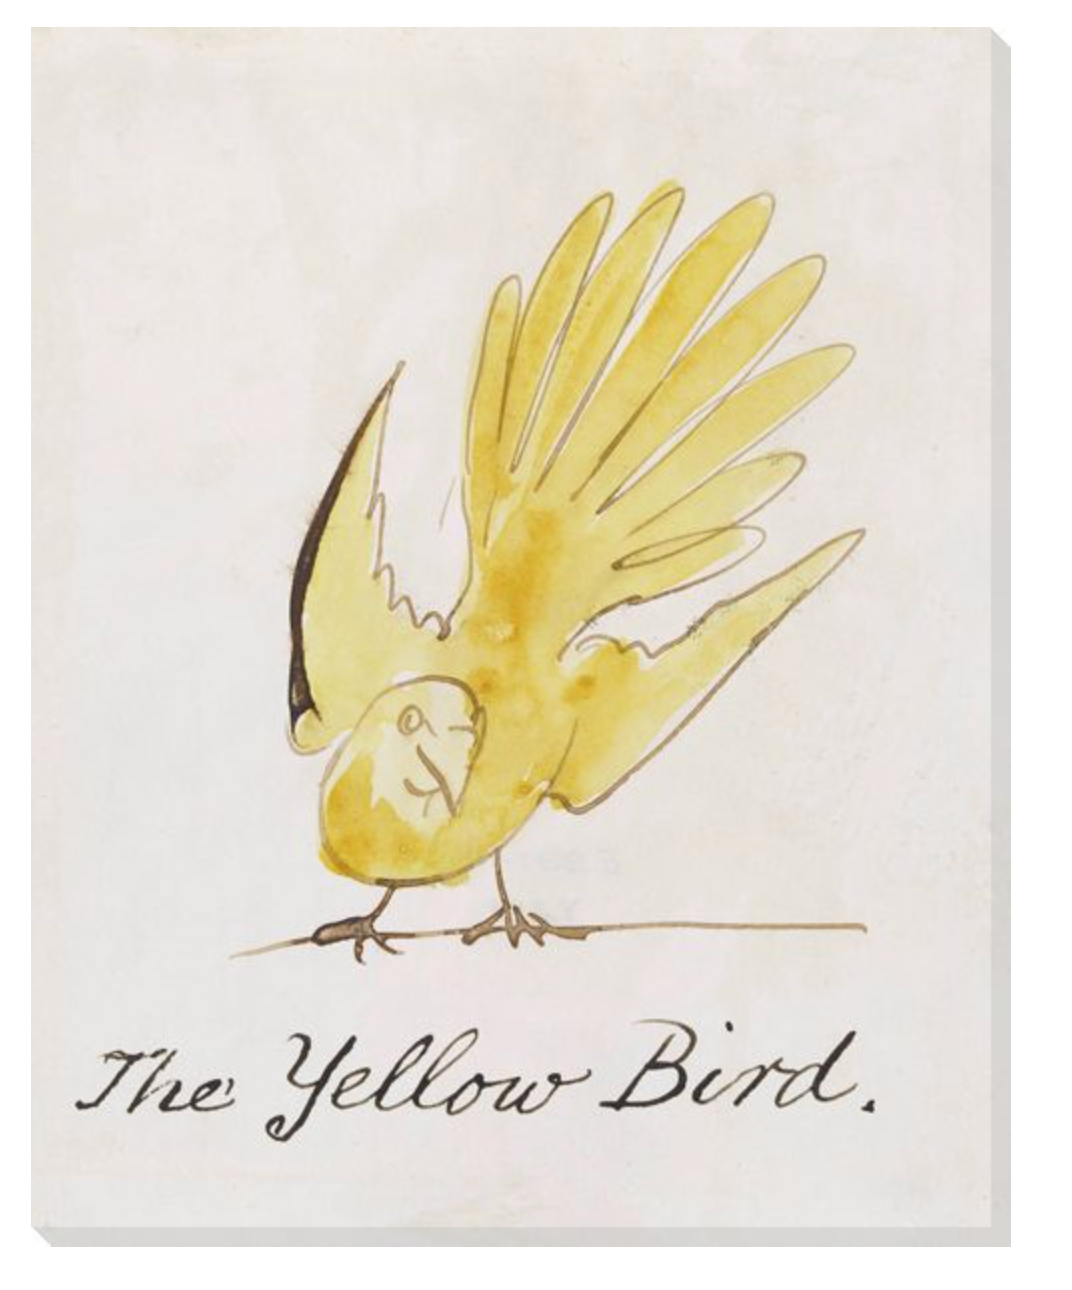 THE YELLOW BIRD